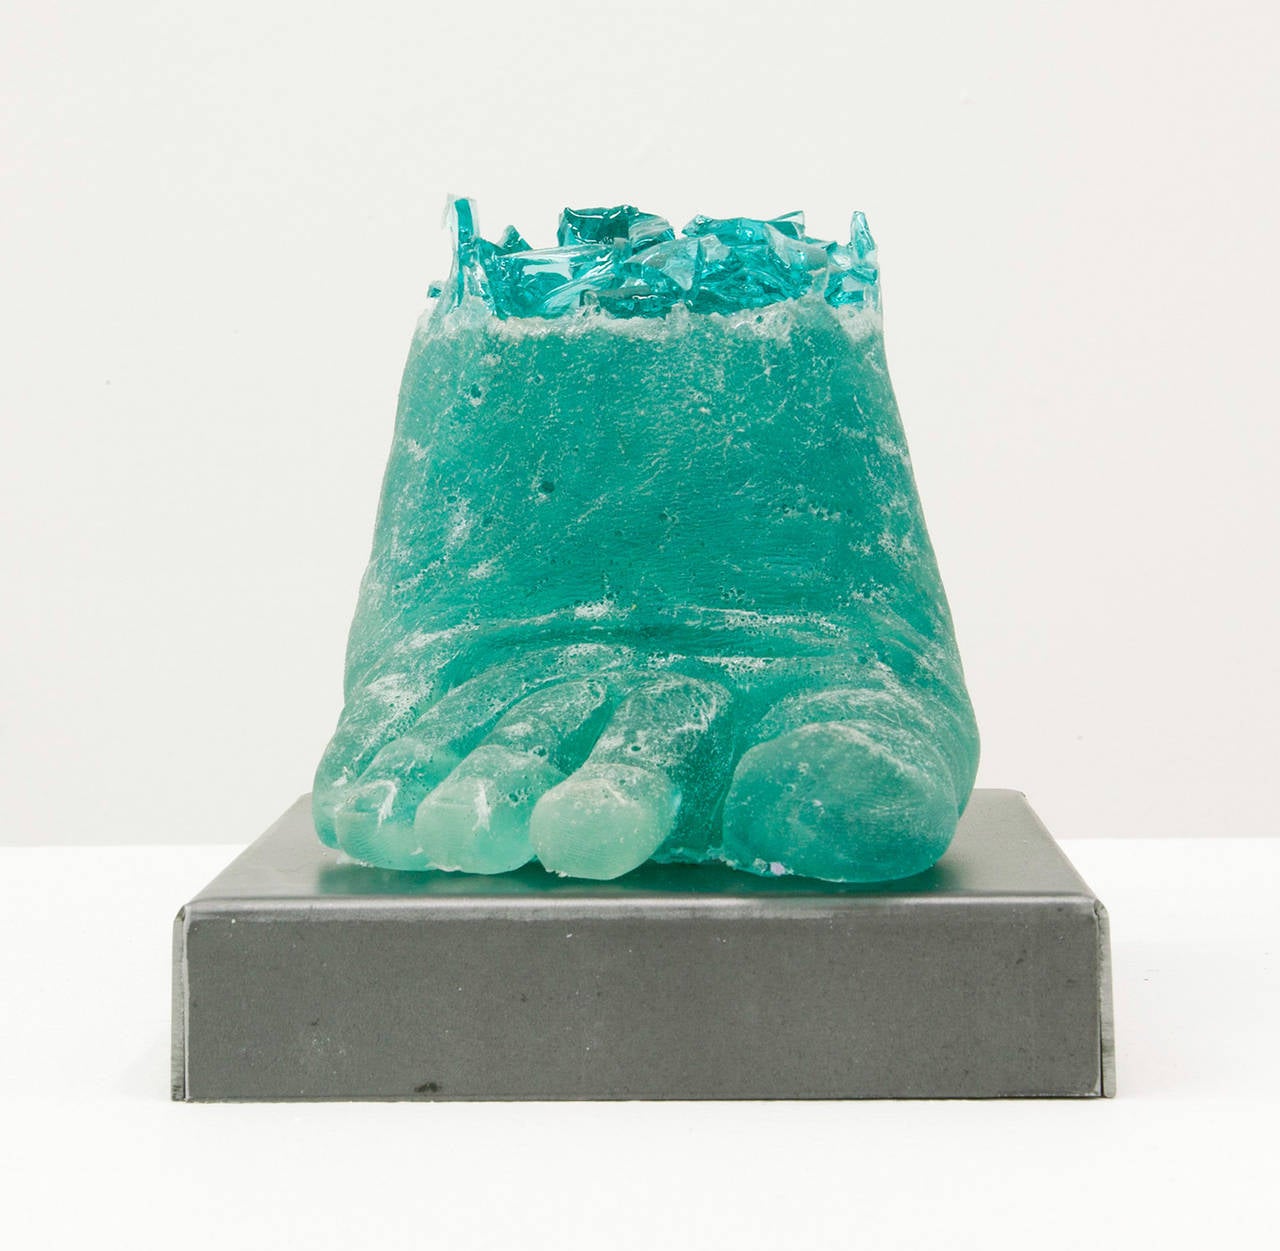 Footwear (Turquoise Heel) - Sculpture by Rachel Owens